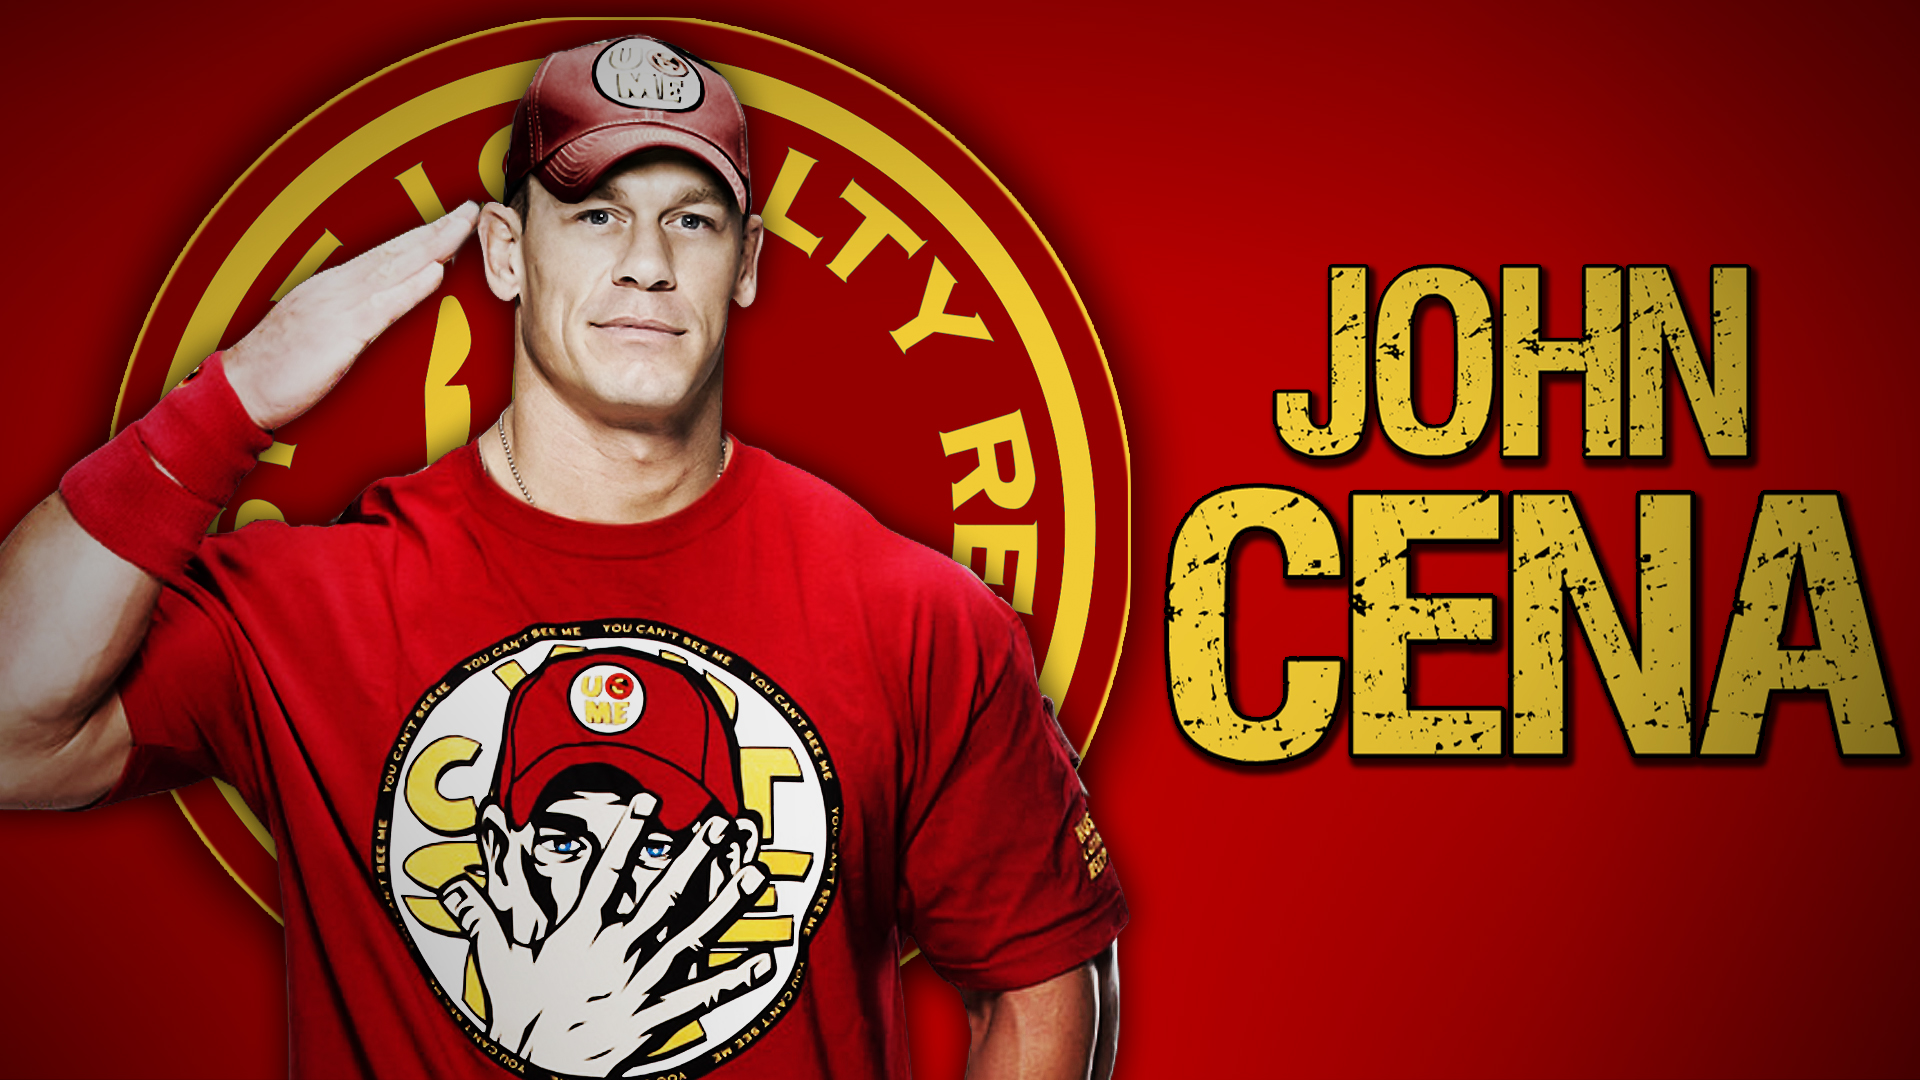 John Cena Wallpaper For Puter